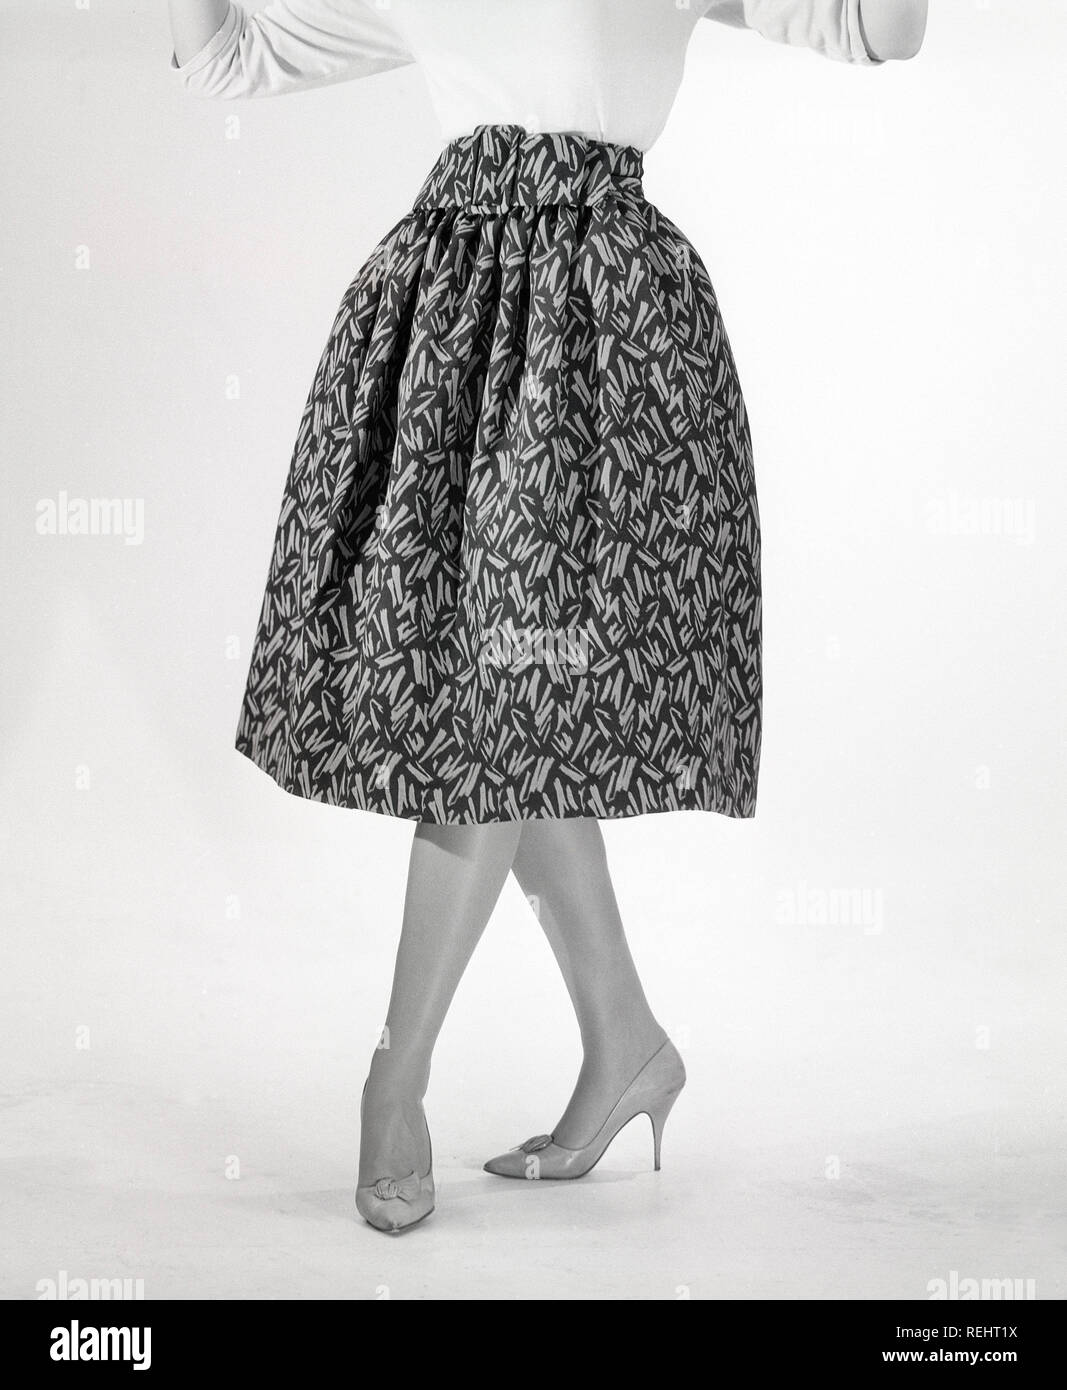 La mode des années 1950. Une jeune femme en robe typique des années 50. Une jupe large robe avec un tissu 50s patterened. La Suède des années 1950. Tu1-3 ref CO Kristoffersson Photo Banque D'Images